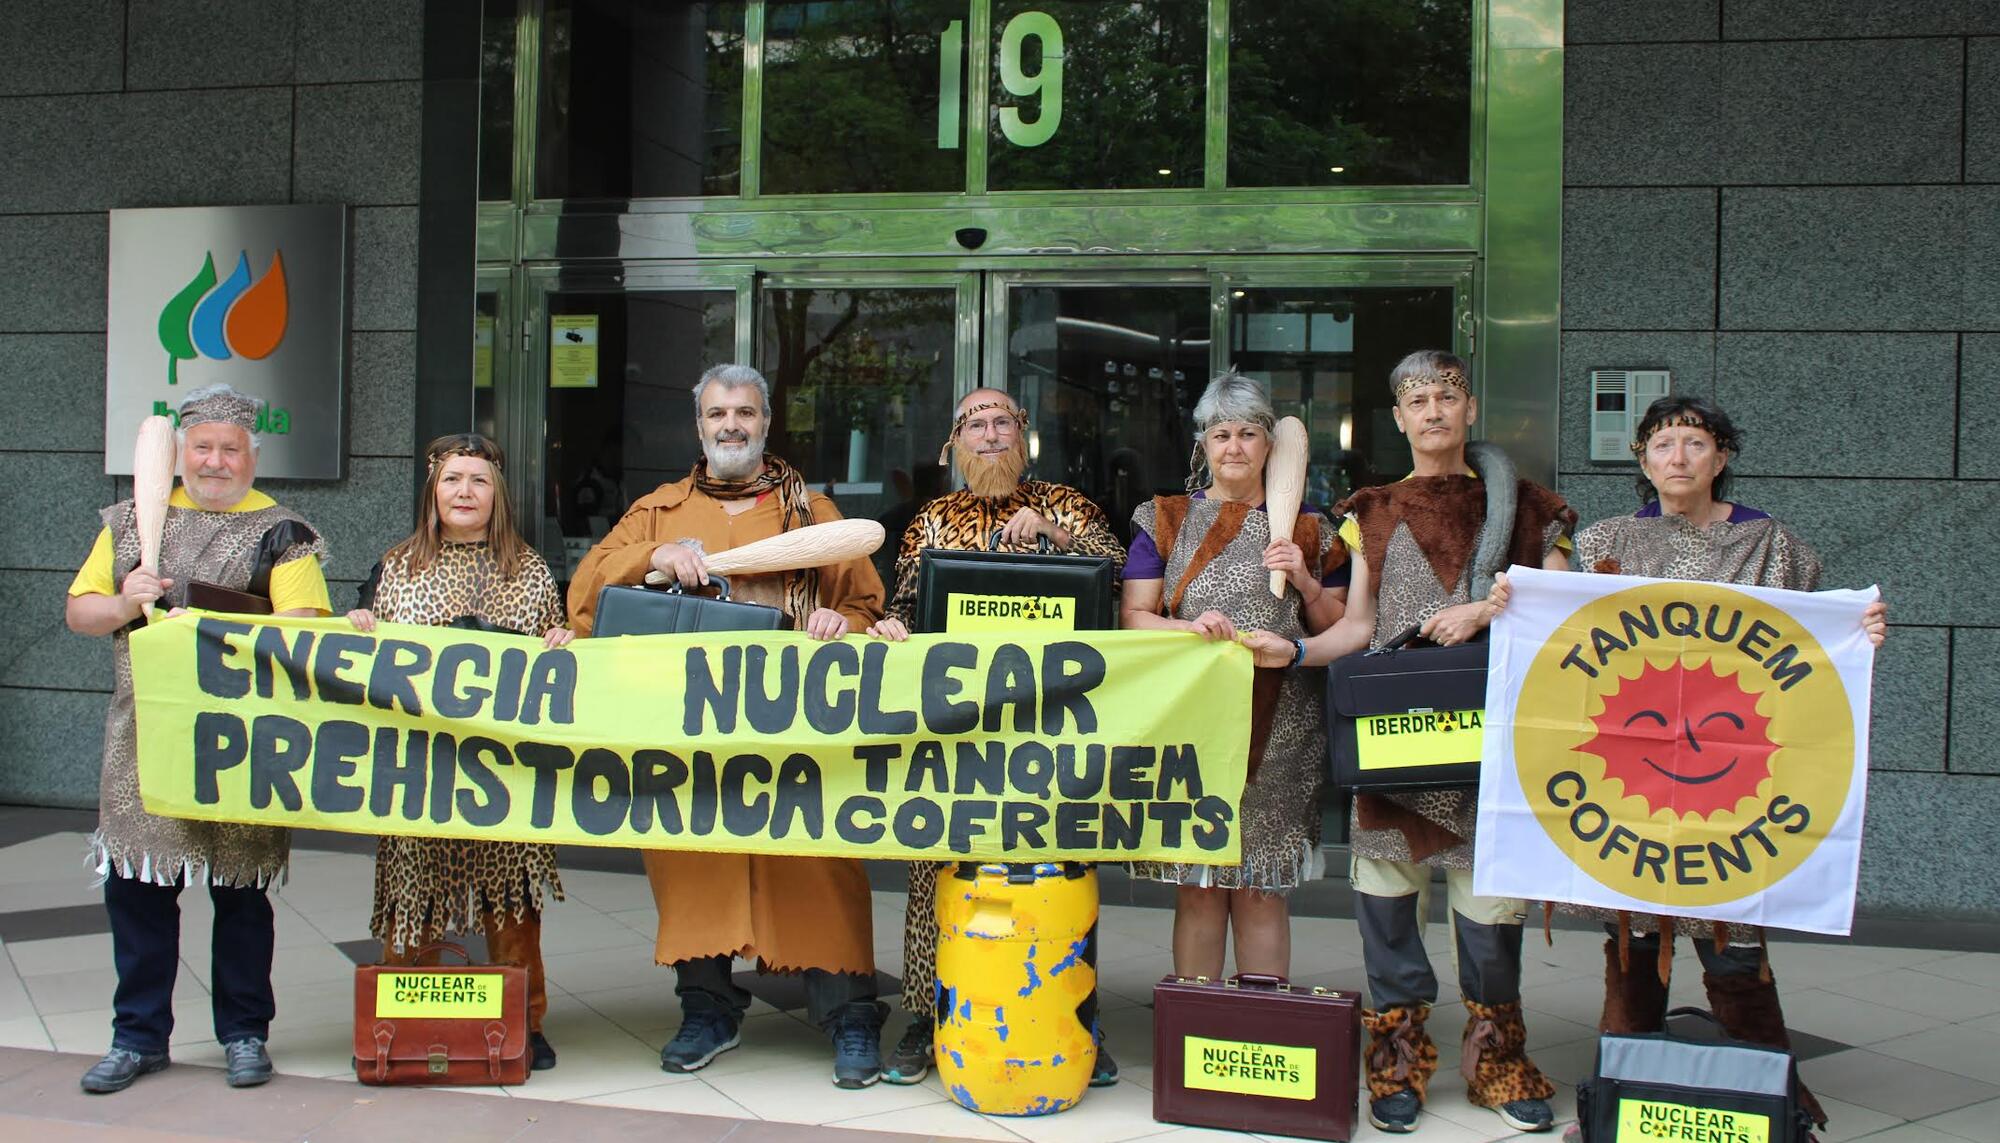 Activistas no nuclear cofrents